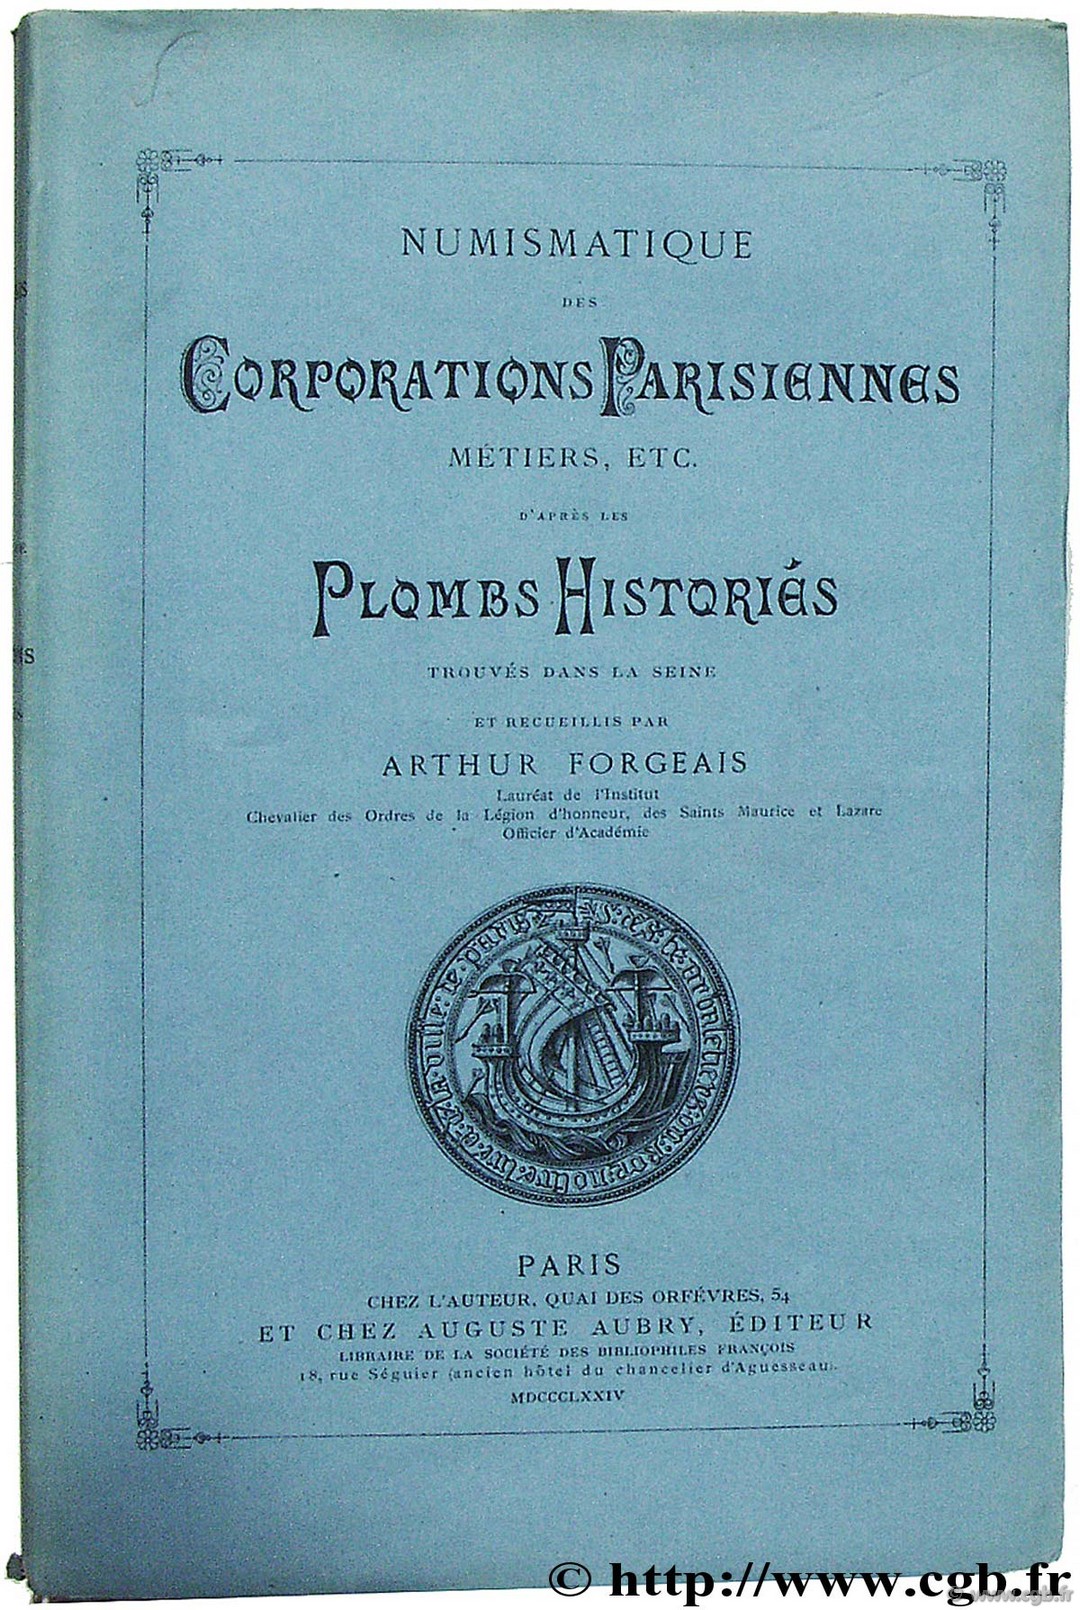 Numismatique des corporations parisiennes, métiers, etc. d après les plombs historiés, trouvés dans la Seine FORGEAIS A.